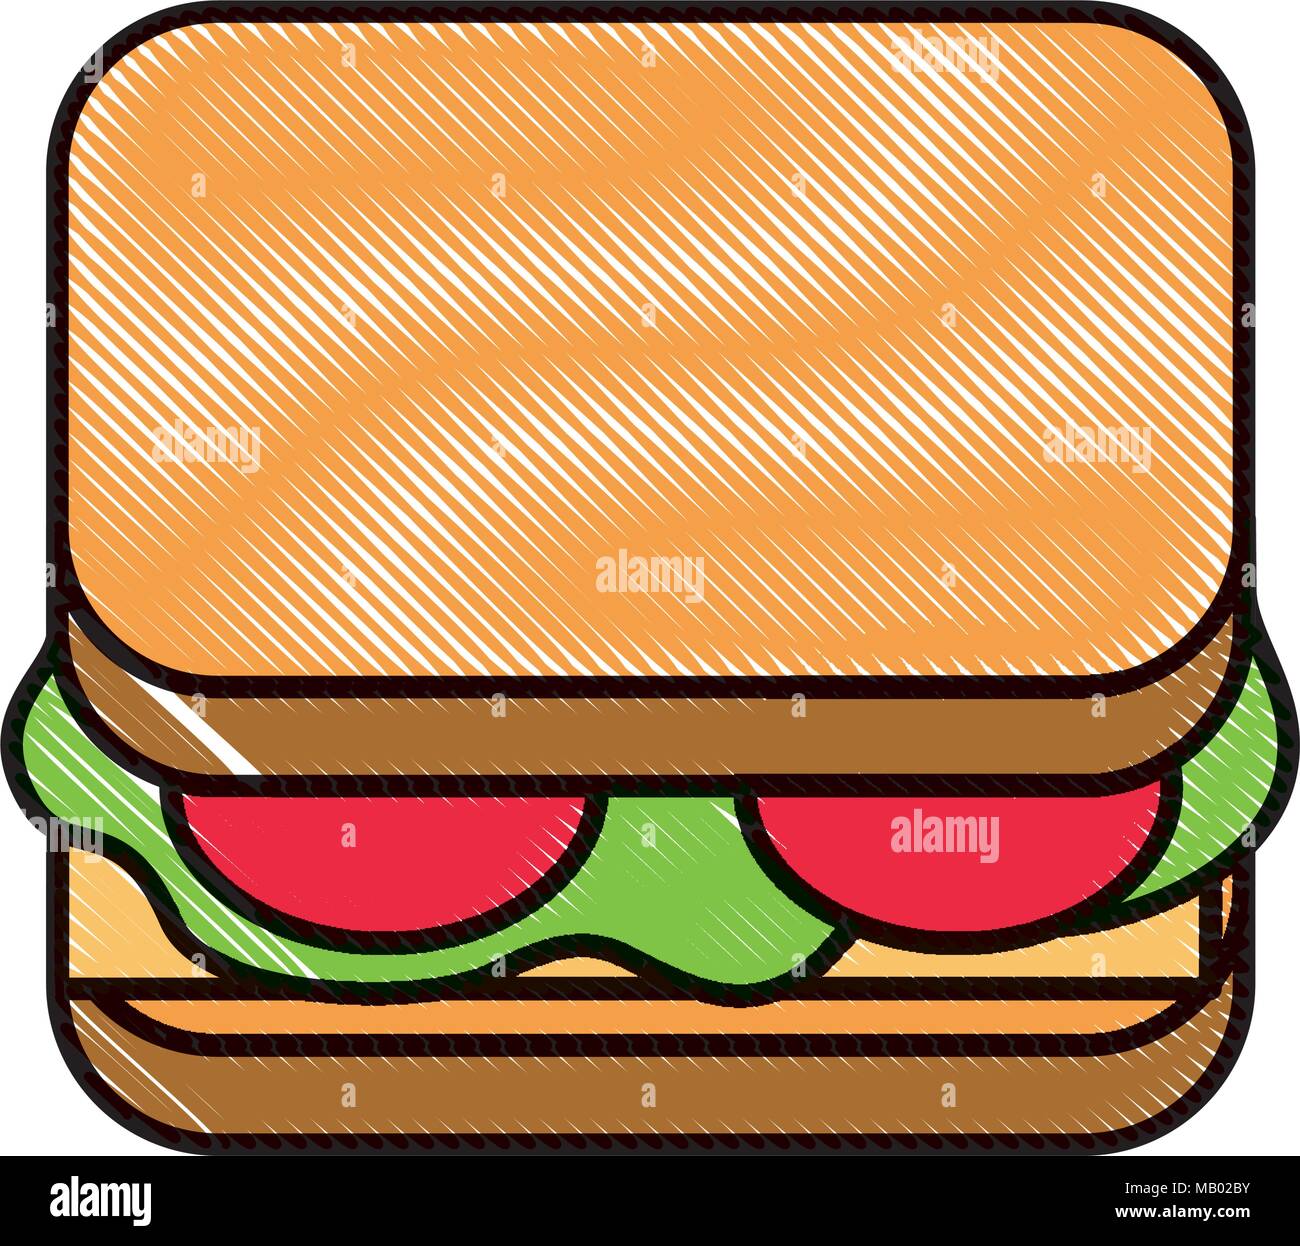 delicious sandwich bread tomato and lettuce Stock Vector Image & Art ...